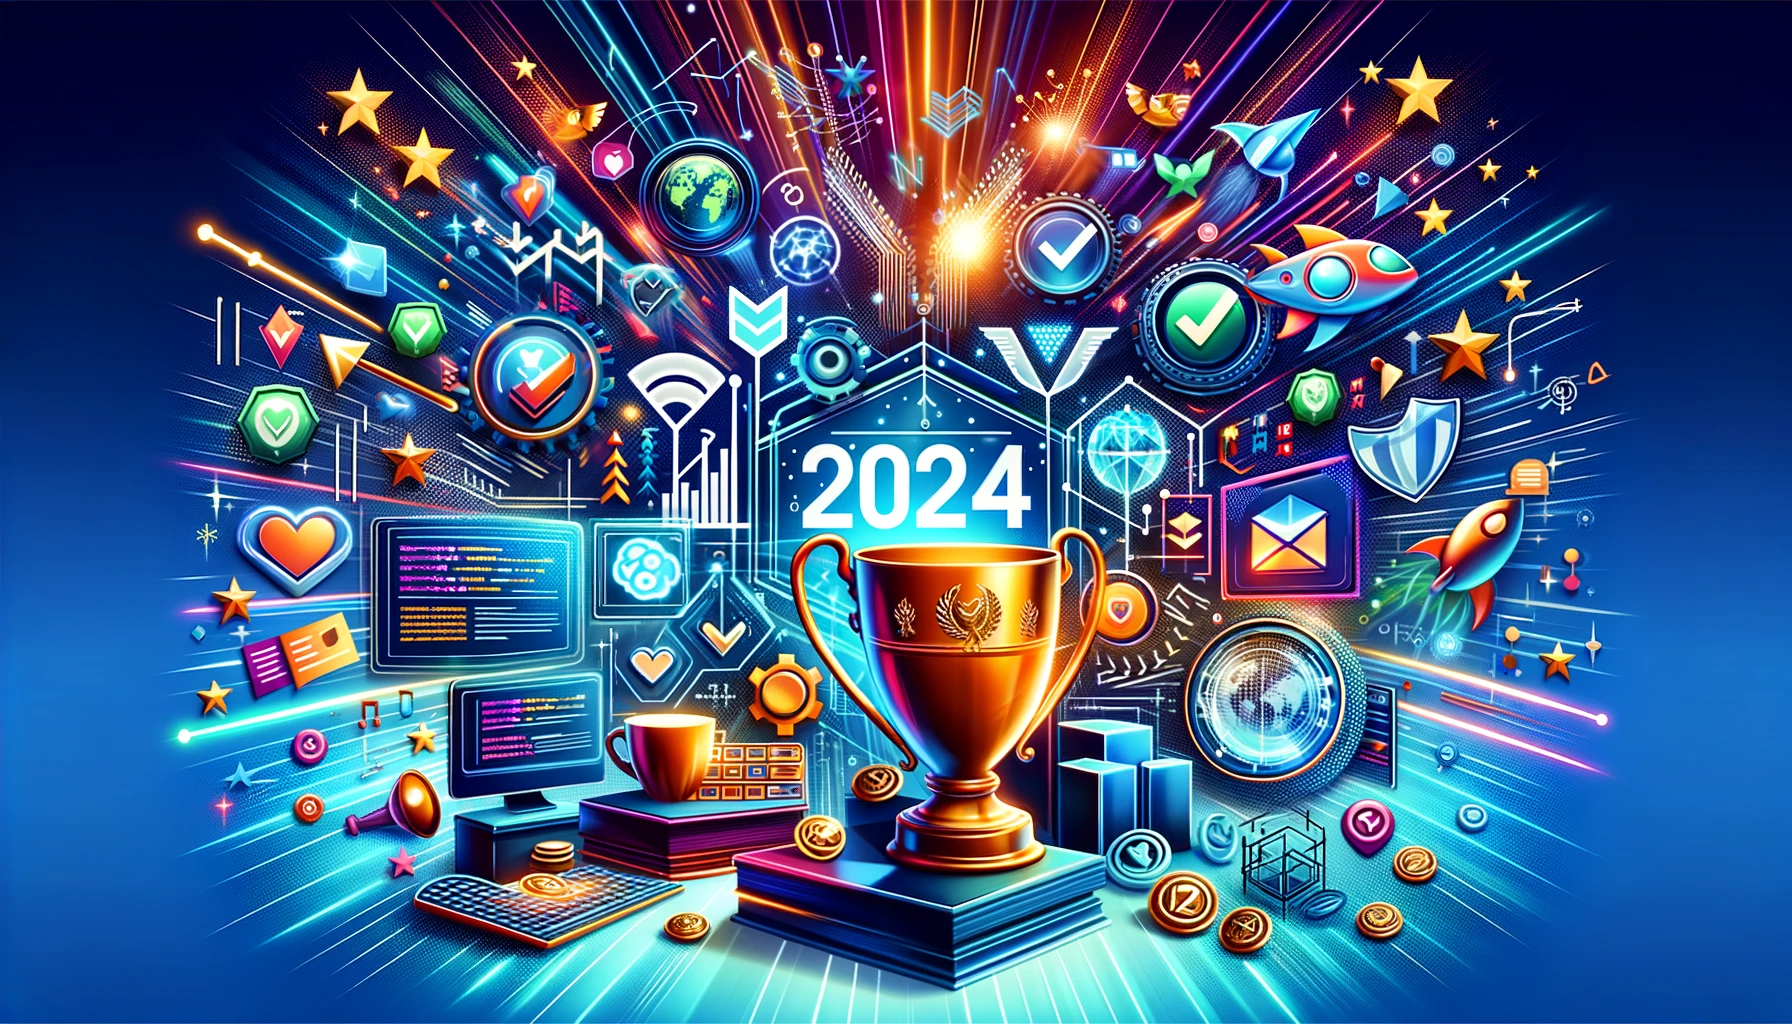 Representación artística de los elementos de éxito en desarrollo web para 2024, con trofeos, medallas, diseño responsivo y código.